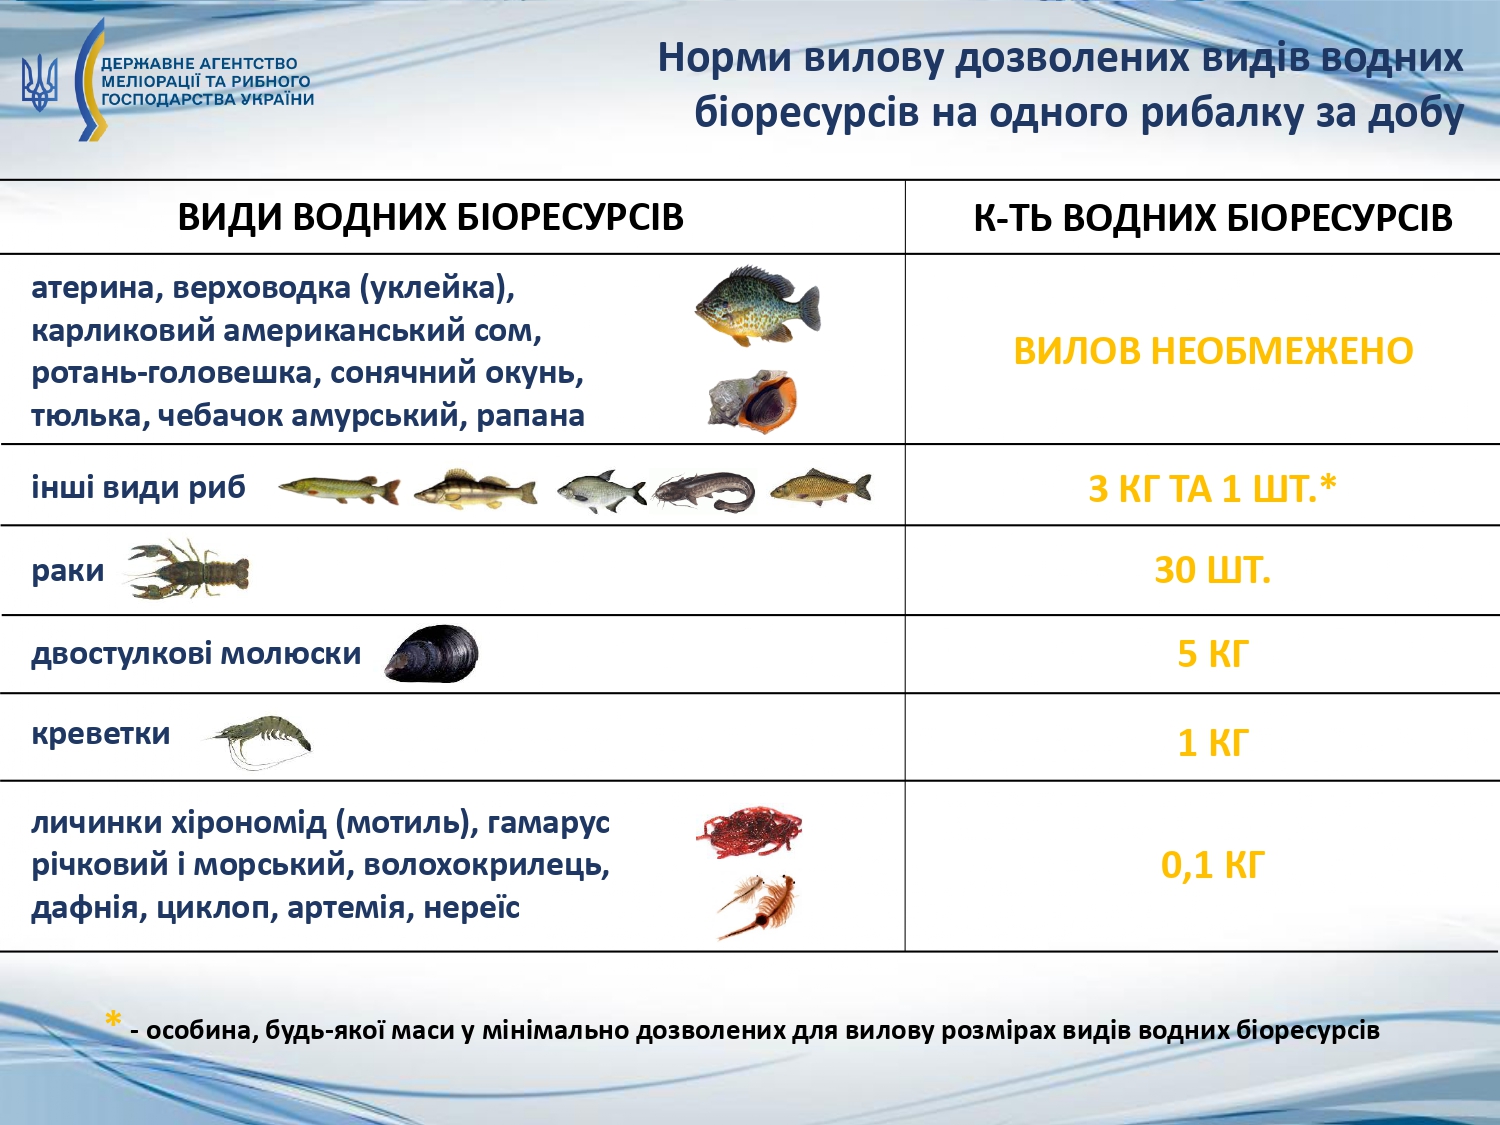 Українців попередили про штрафи. Запам'ятайте ці правила вилову риби, щоб не влетіти в копійку